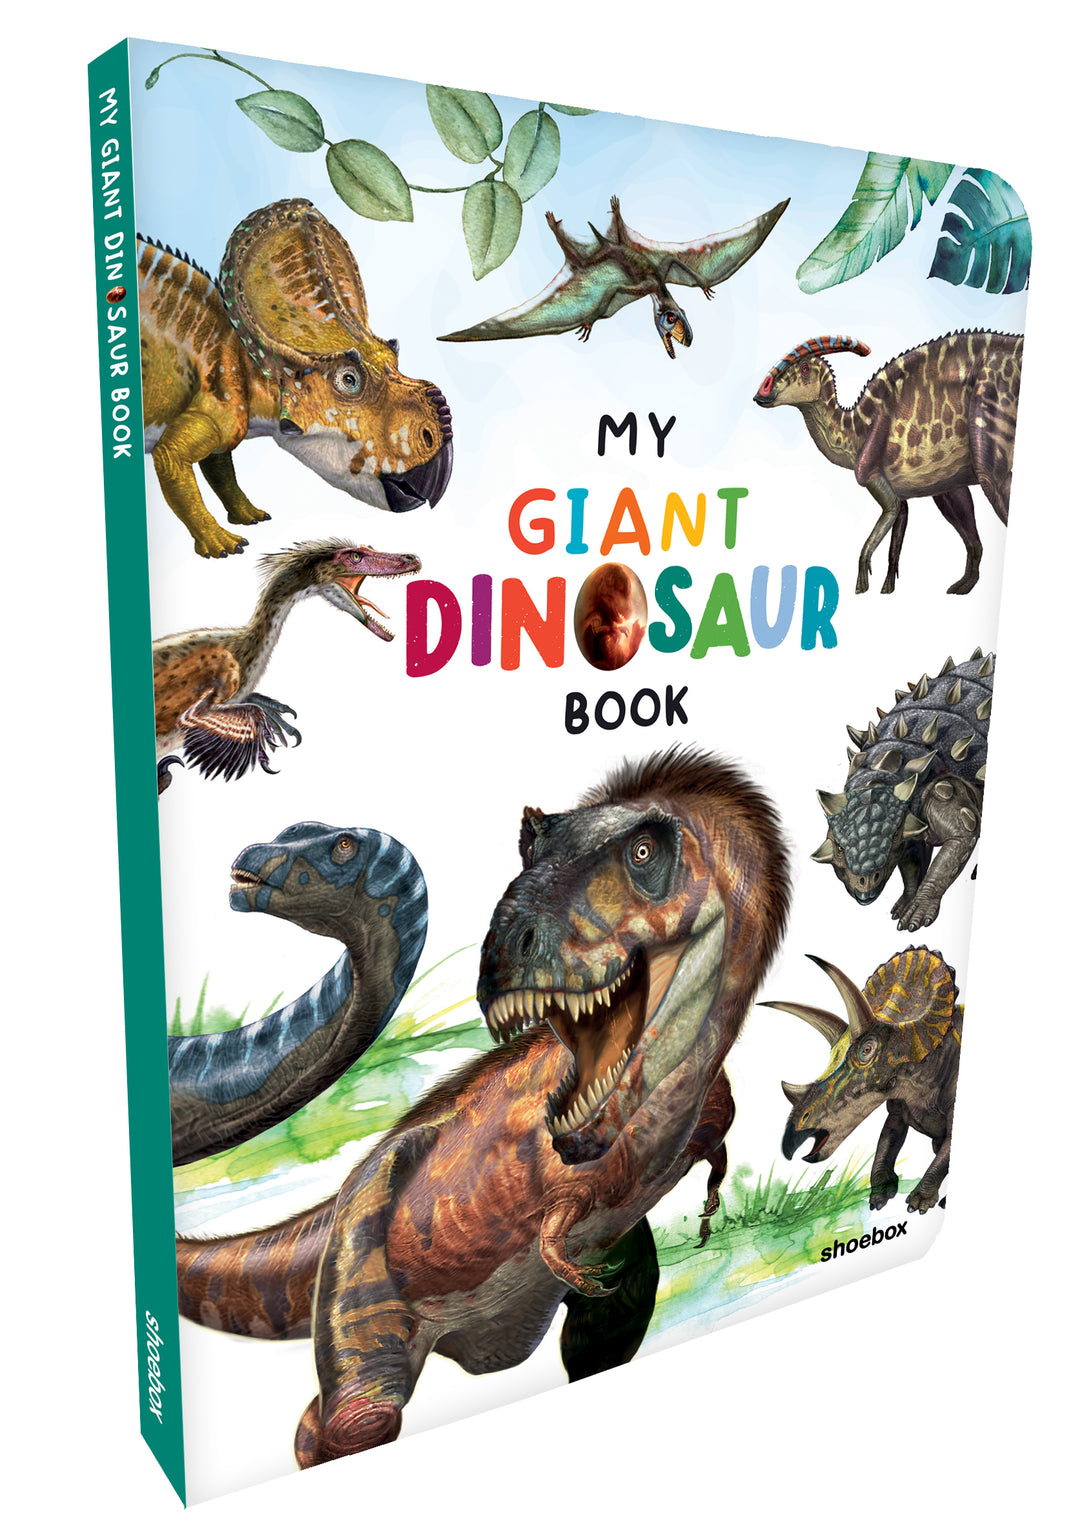 My Giant Dinosaur Book